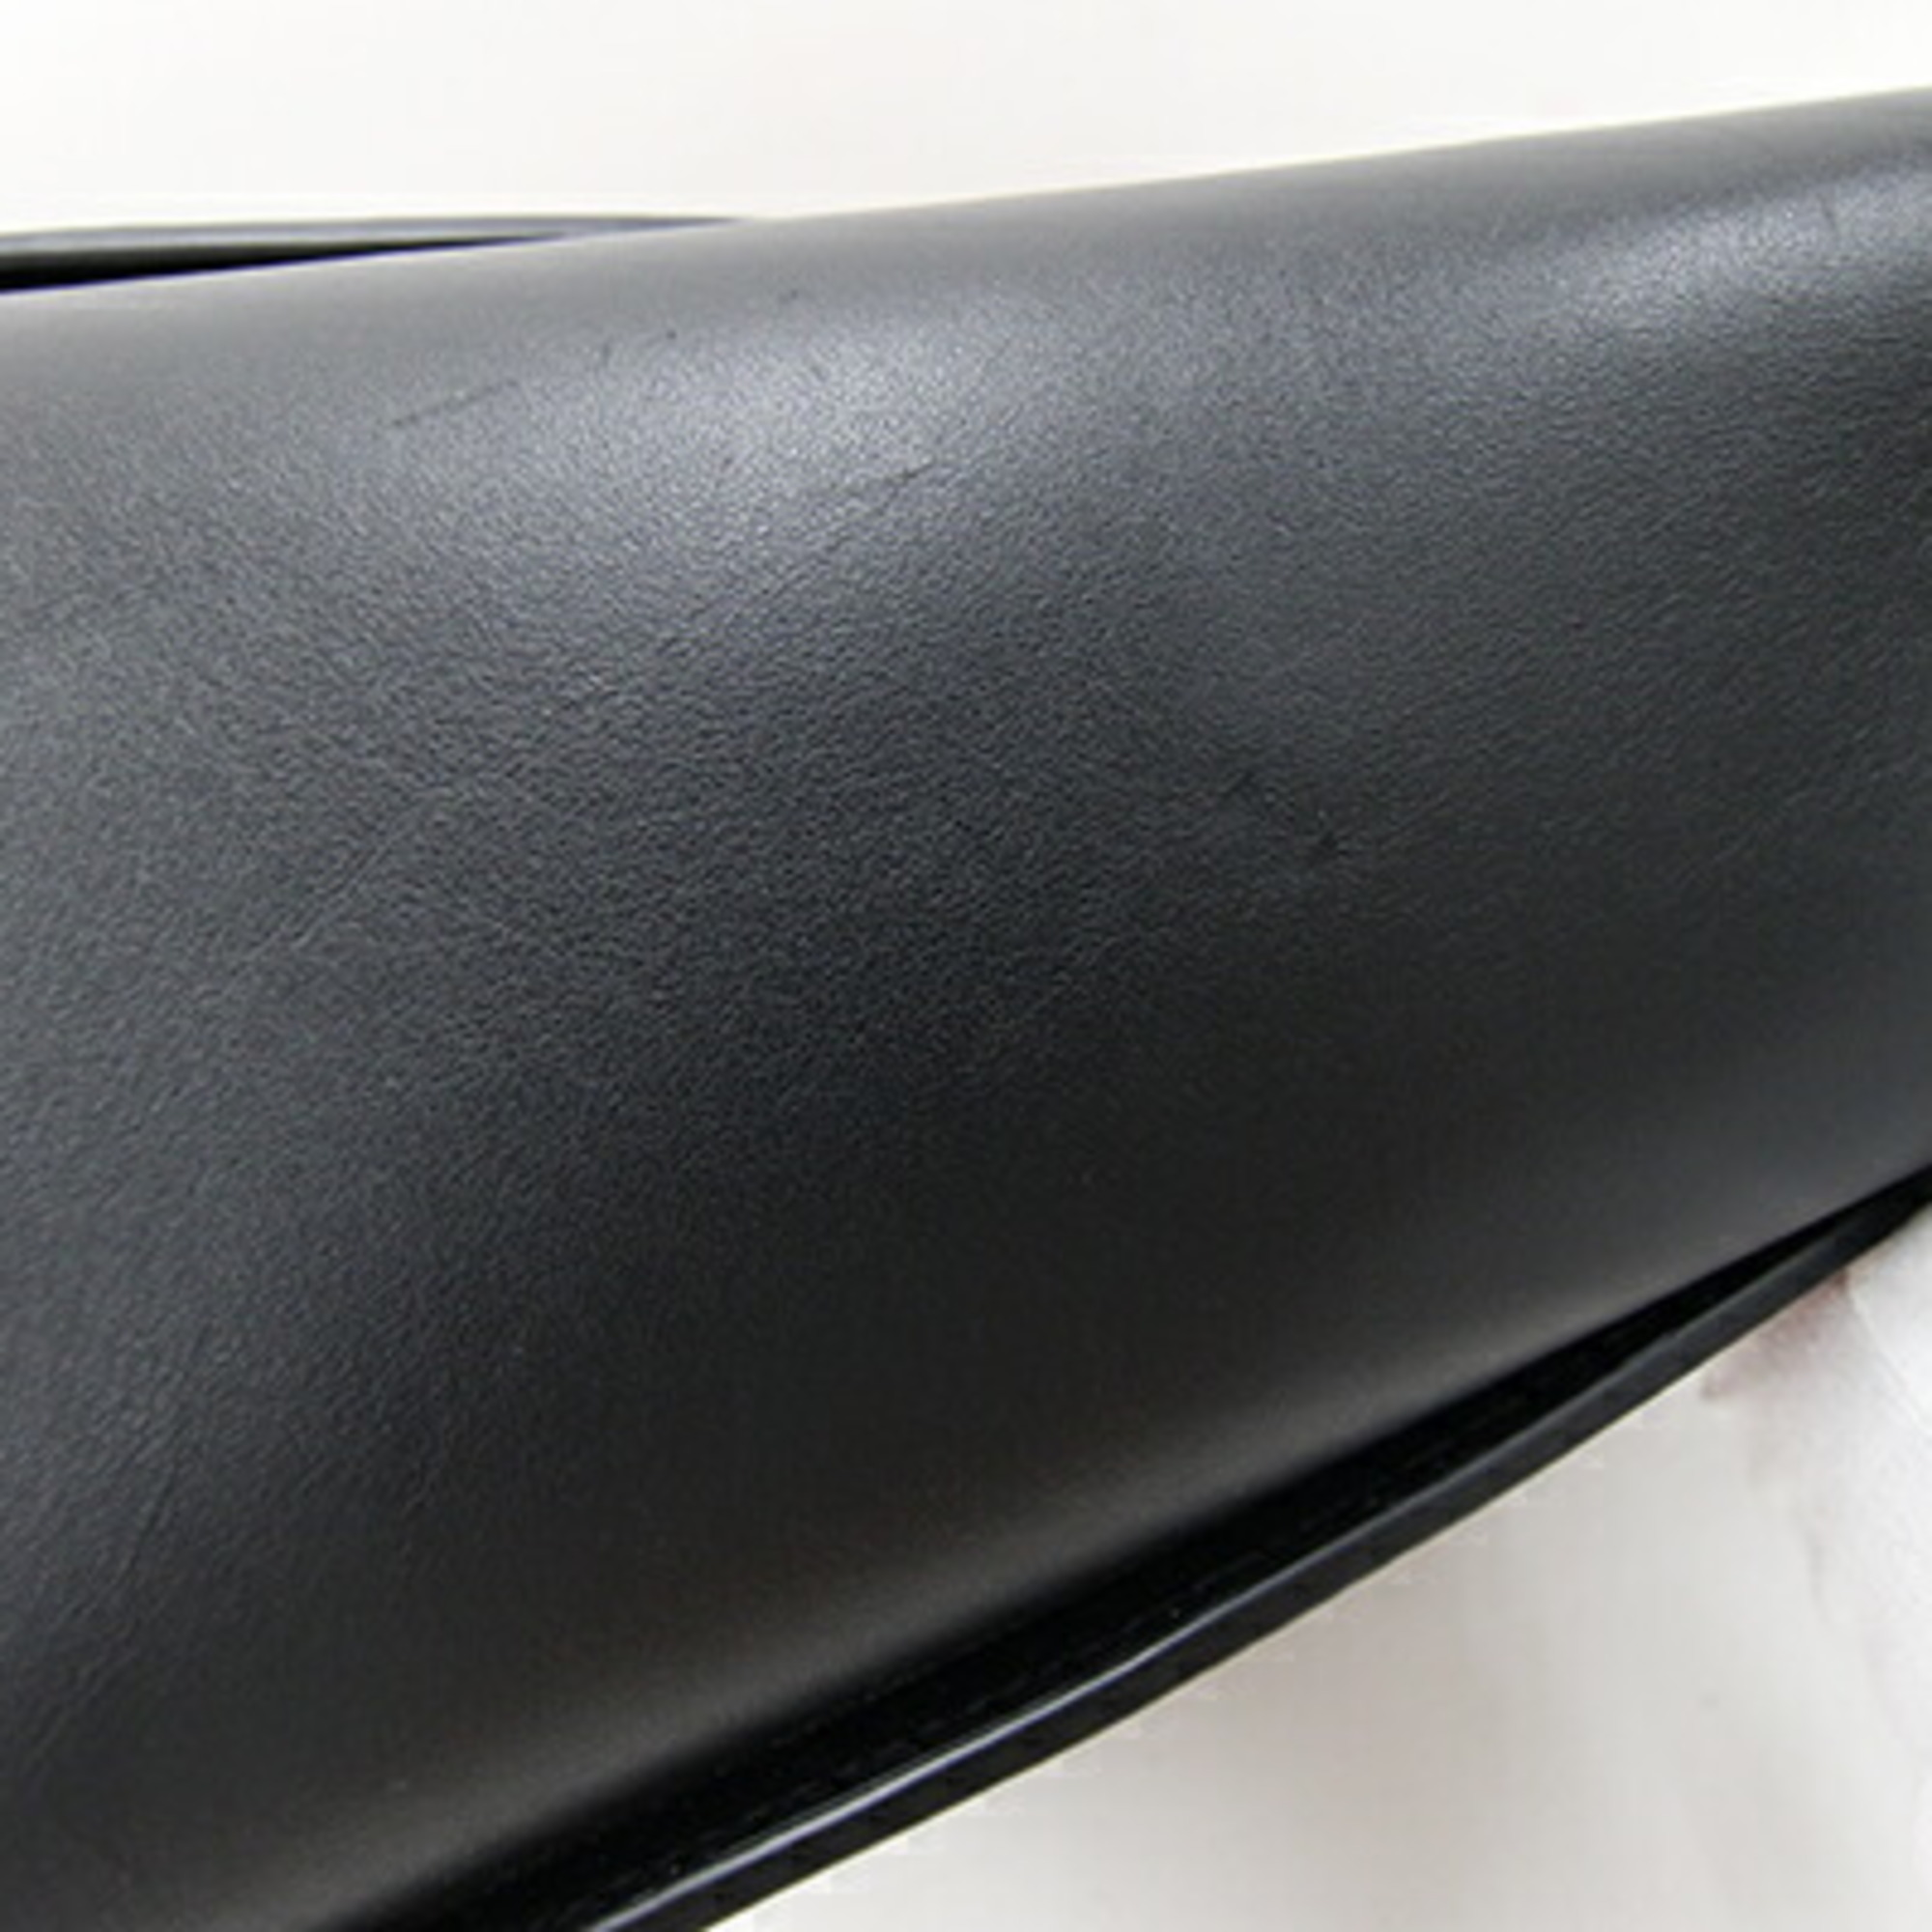 Coach handbag Signature Troop 78487 Black Brown PVC Leather Shoulder Bag Women's COACH